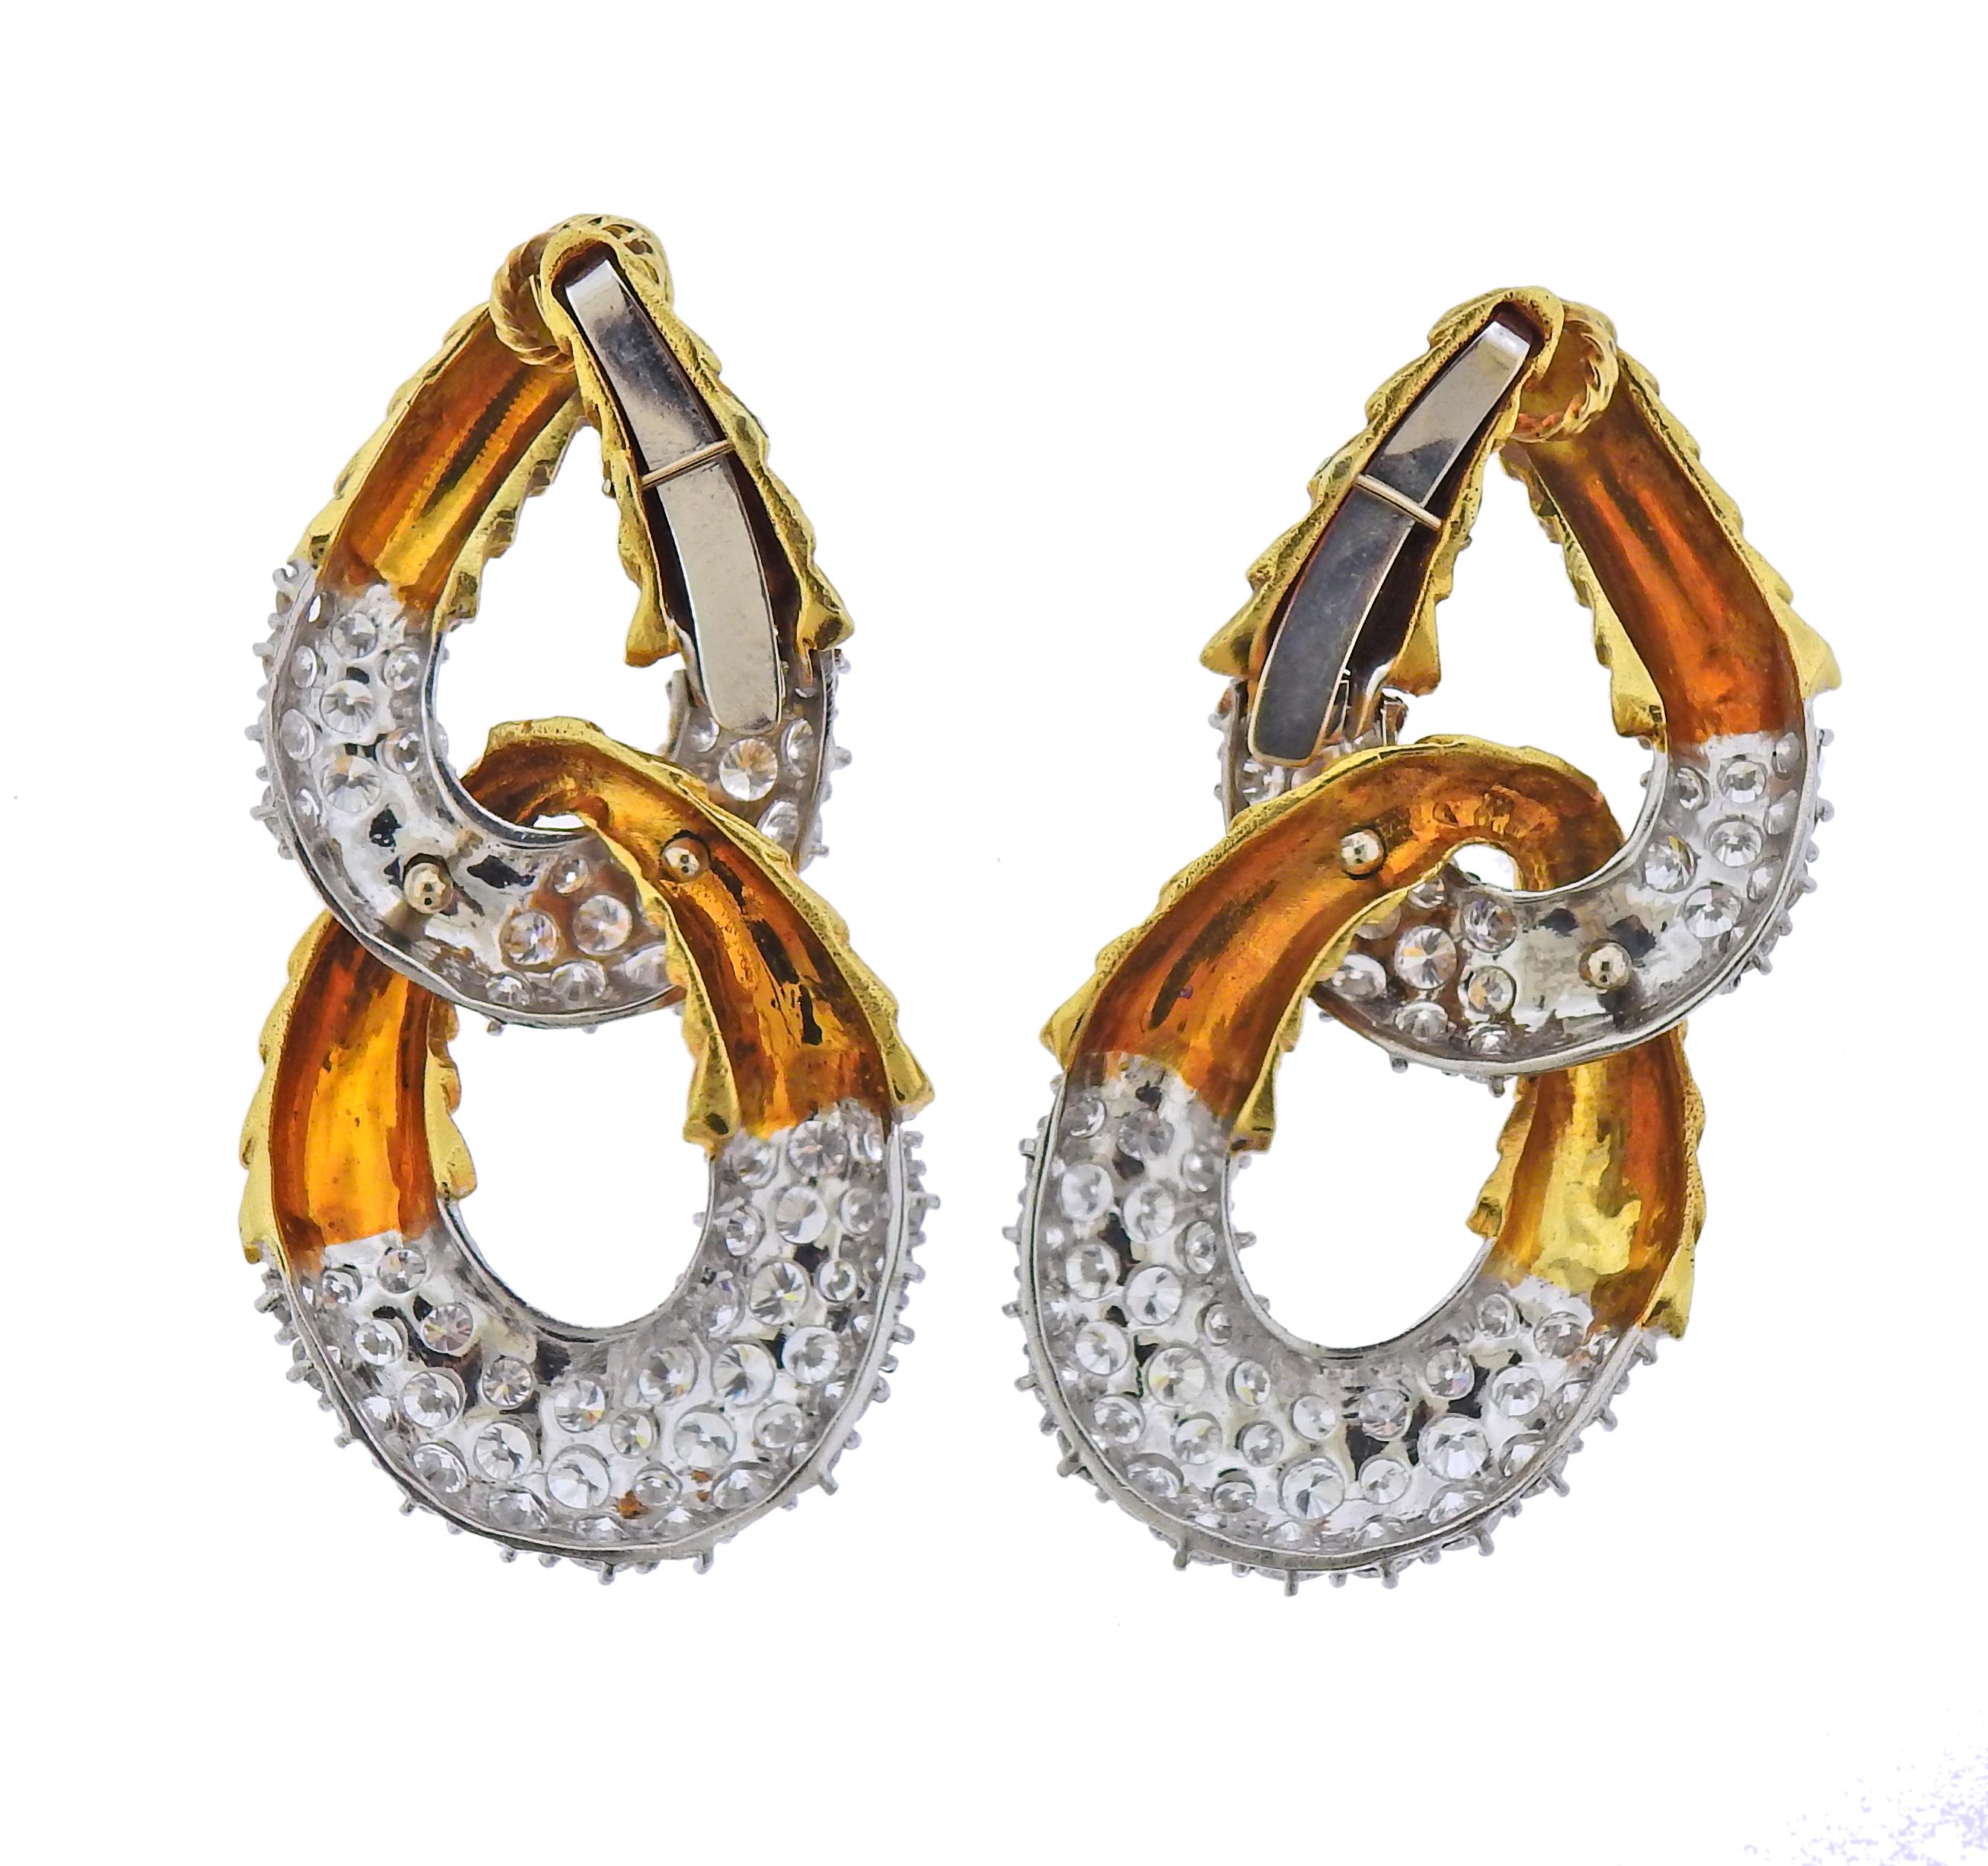 1980s gold earrings